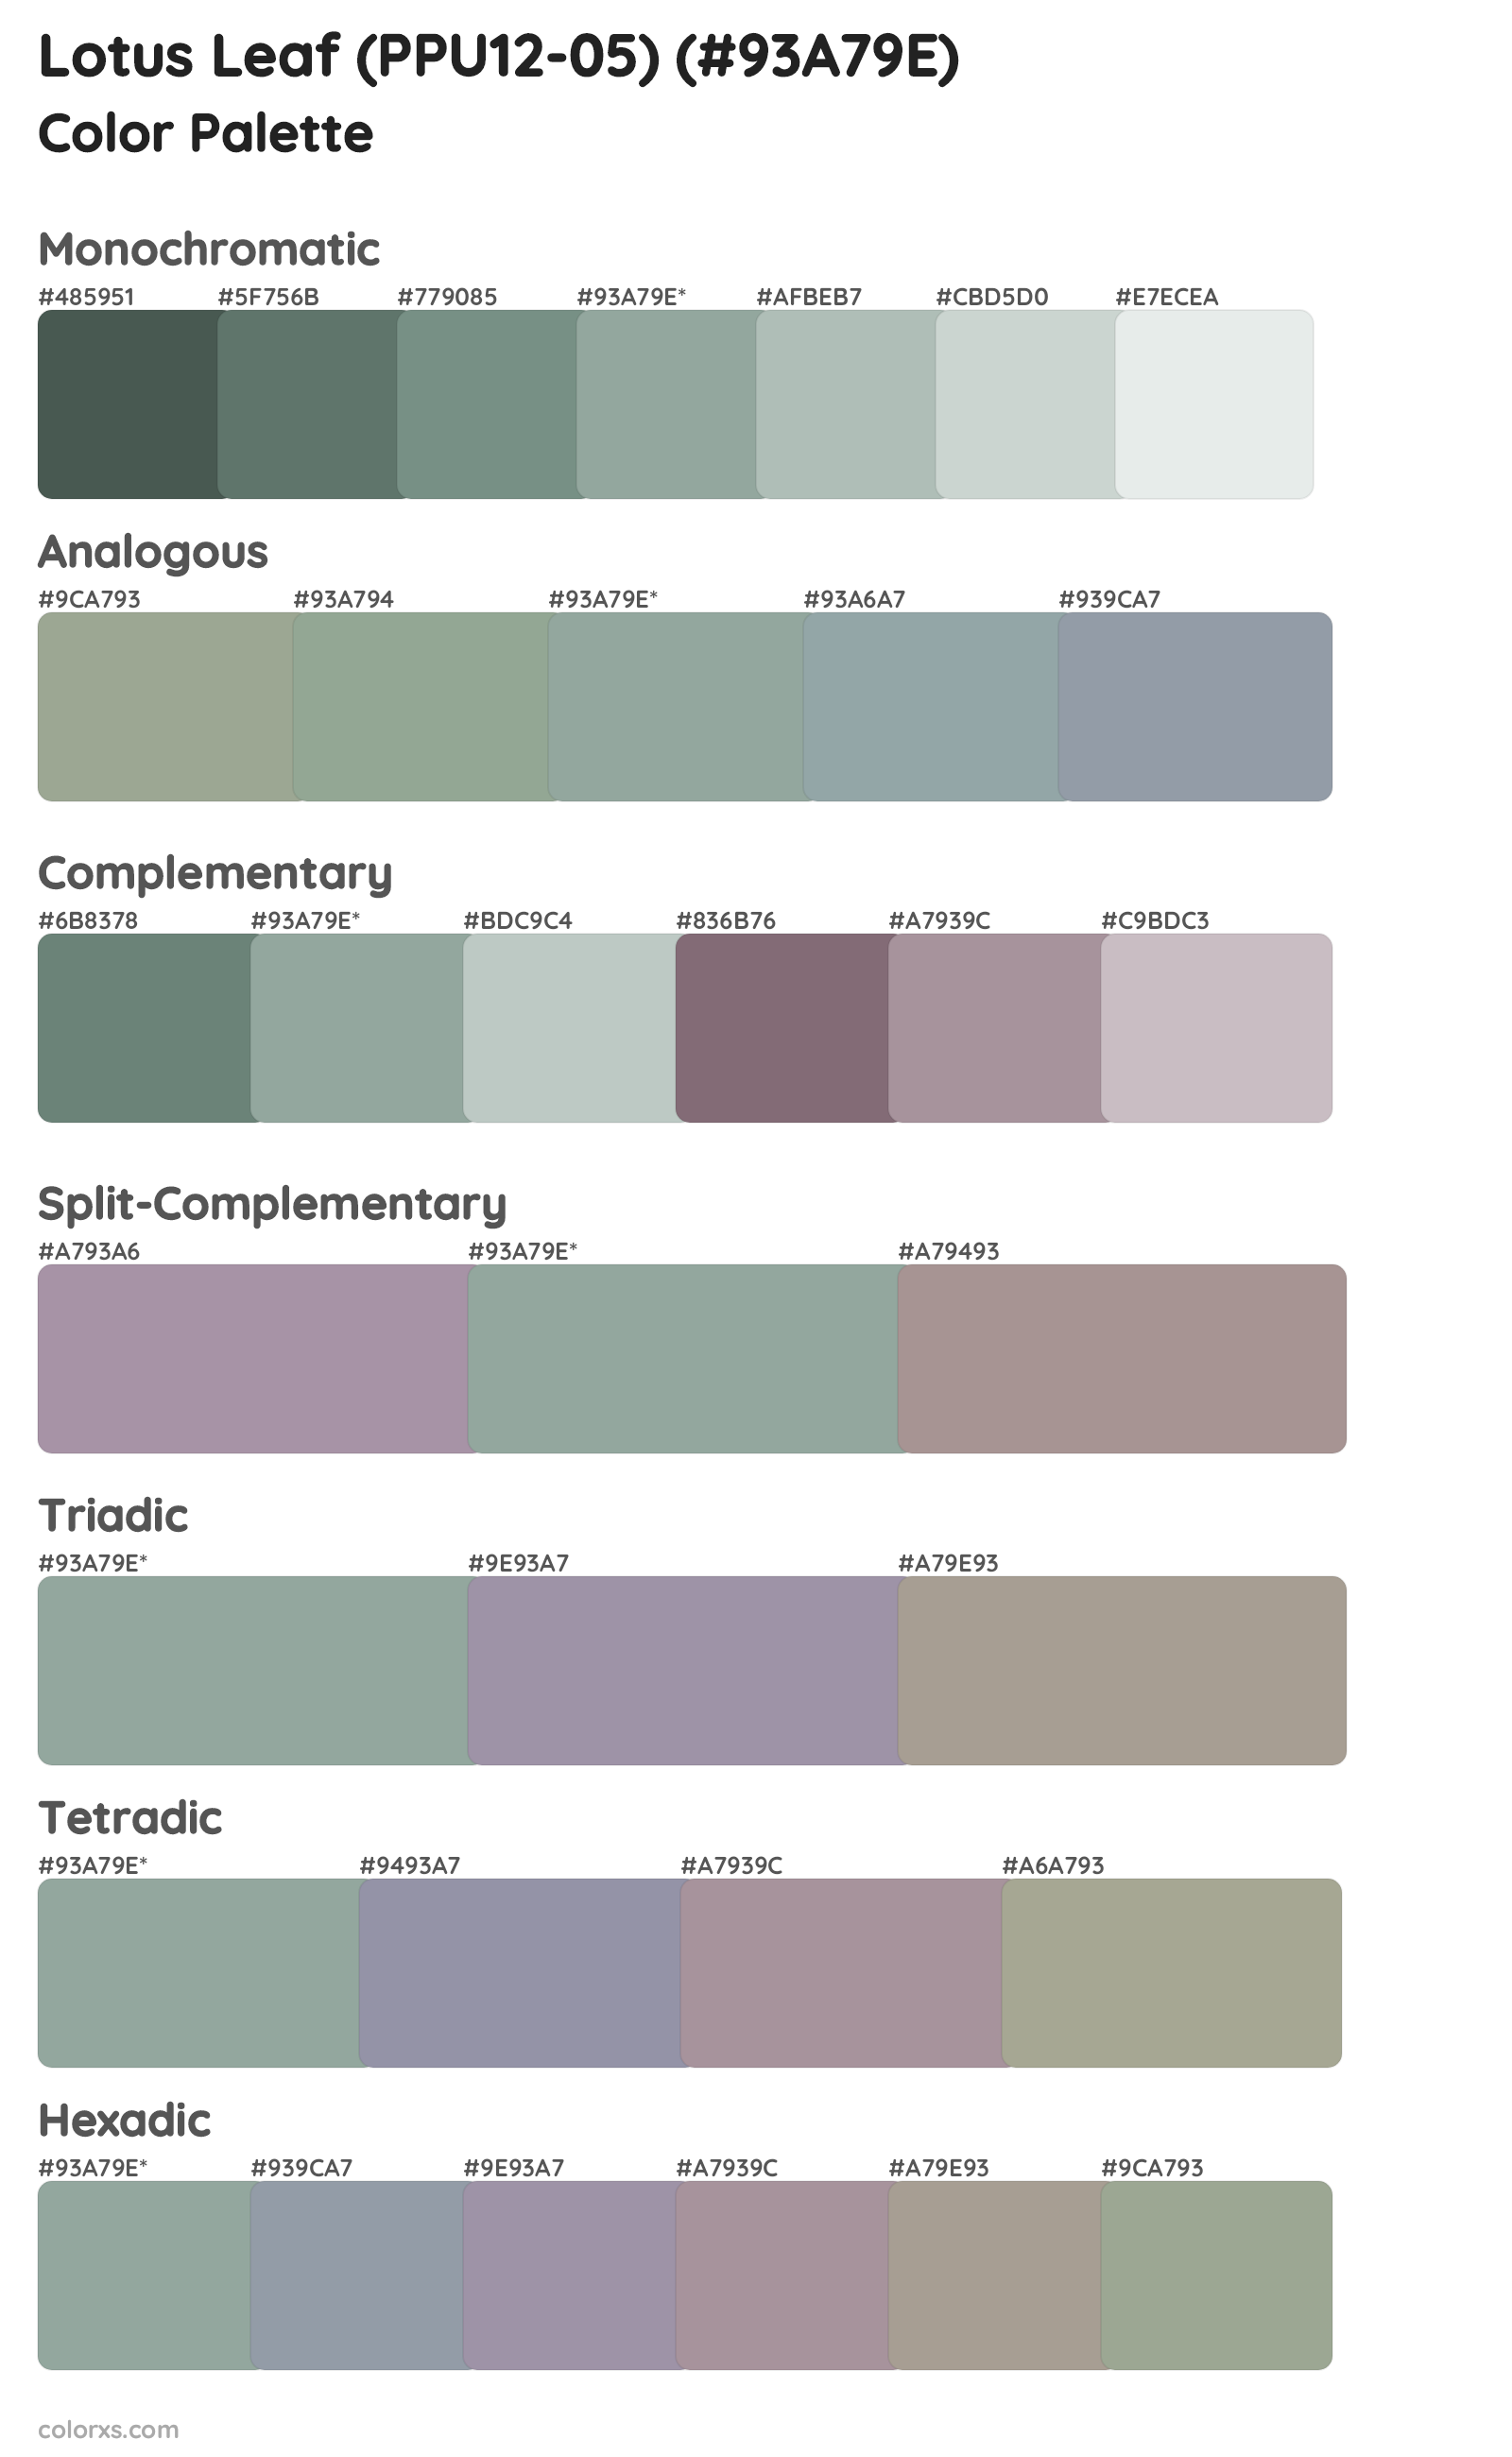 Lotus Leaf (PPU12-05) Color Scheme Palettes